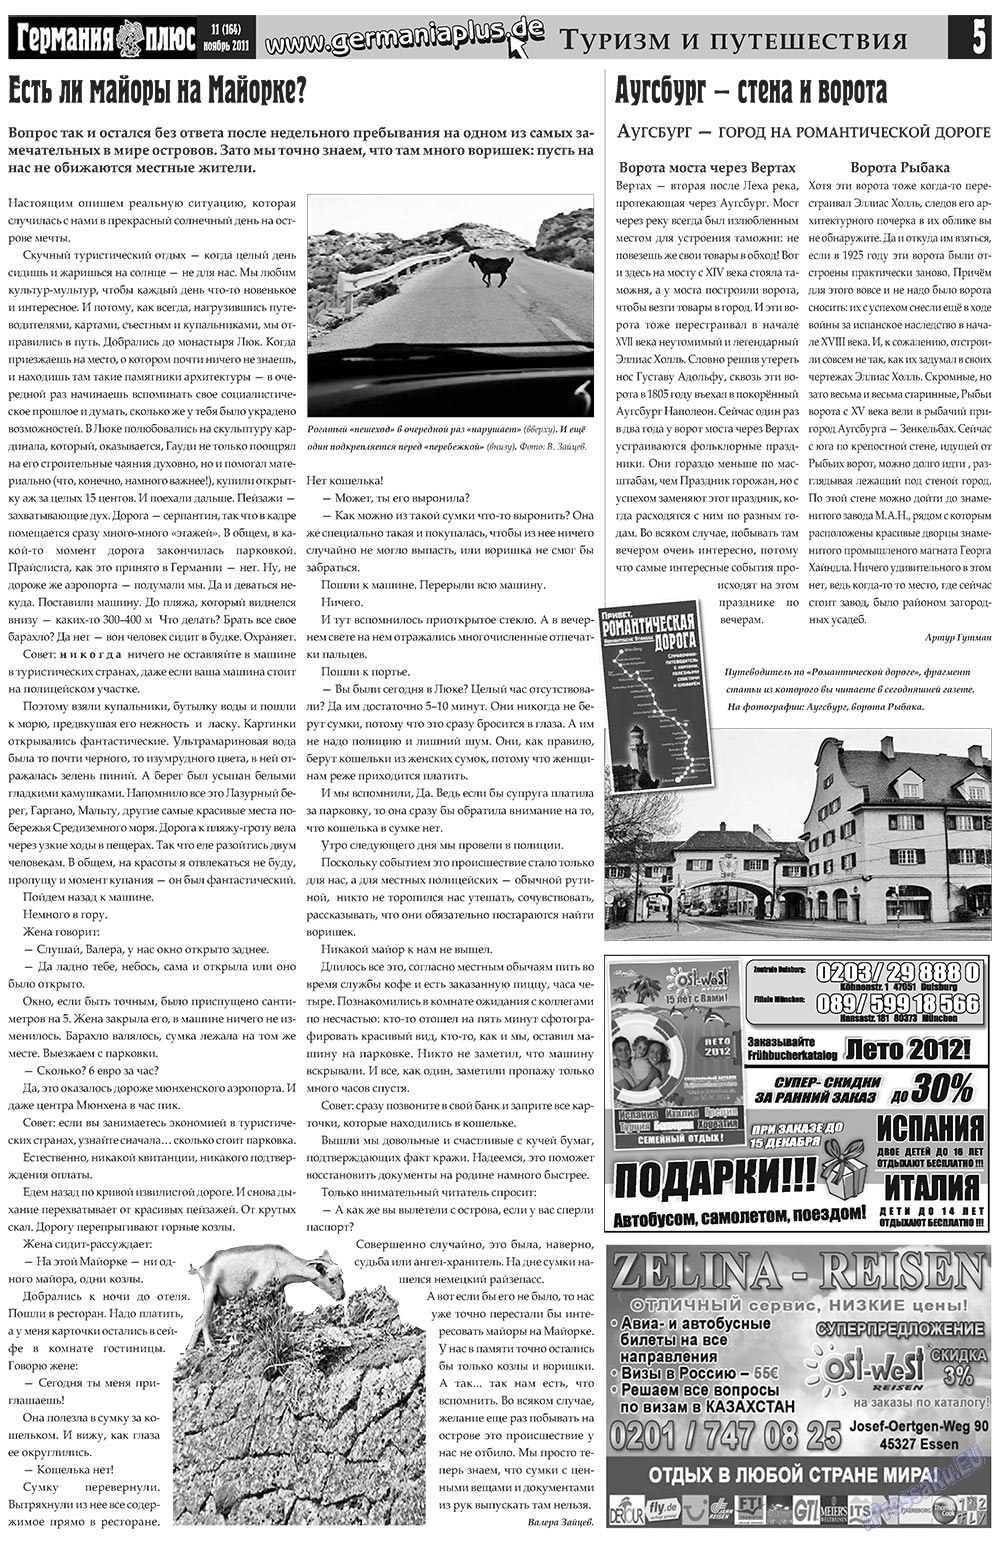 Германия плюс, газета. 2011 №11 стр.5